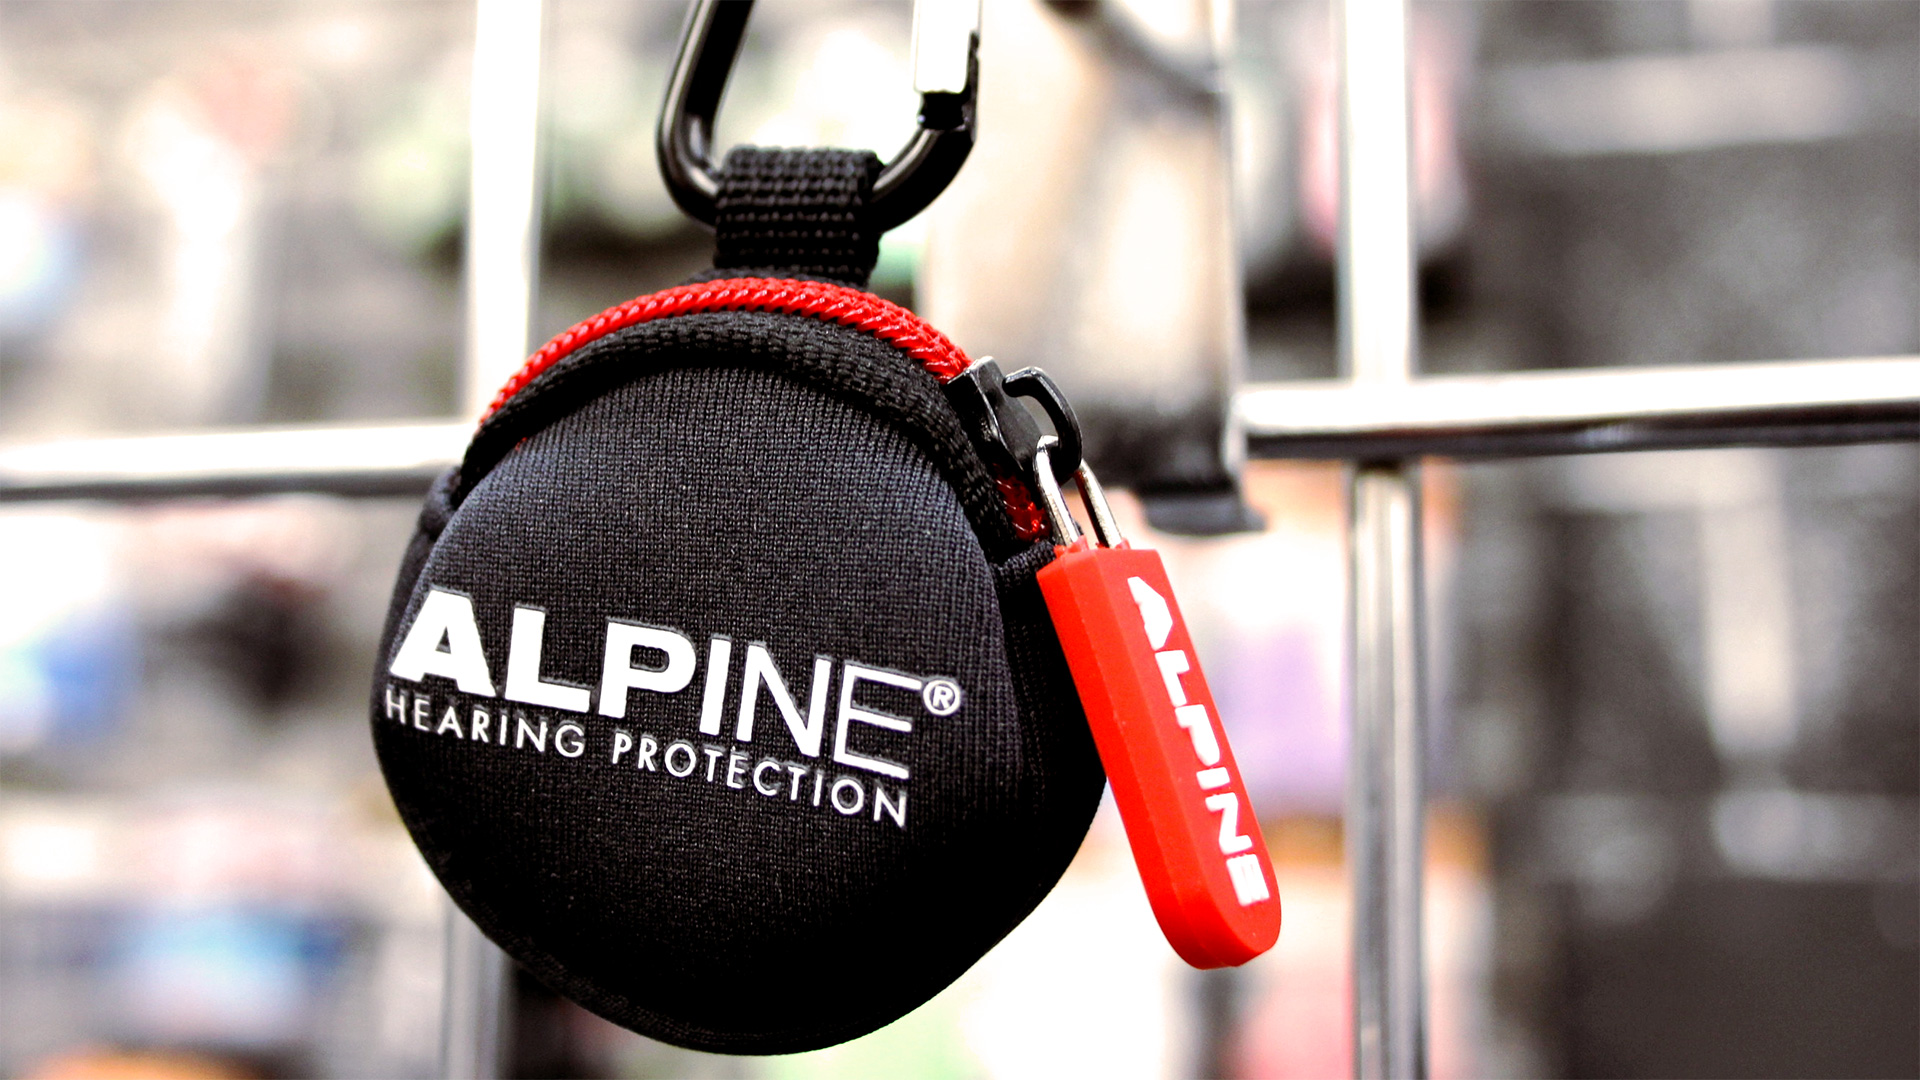 Tappi Alpine: auricolari universali per la protezione dell'udito